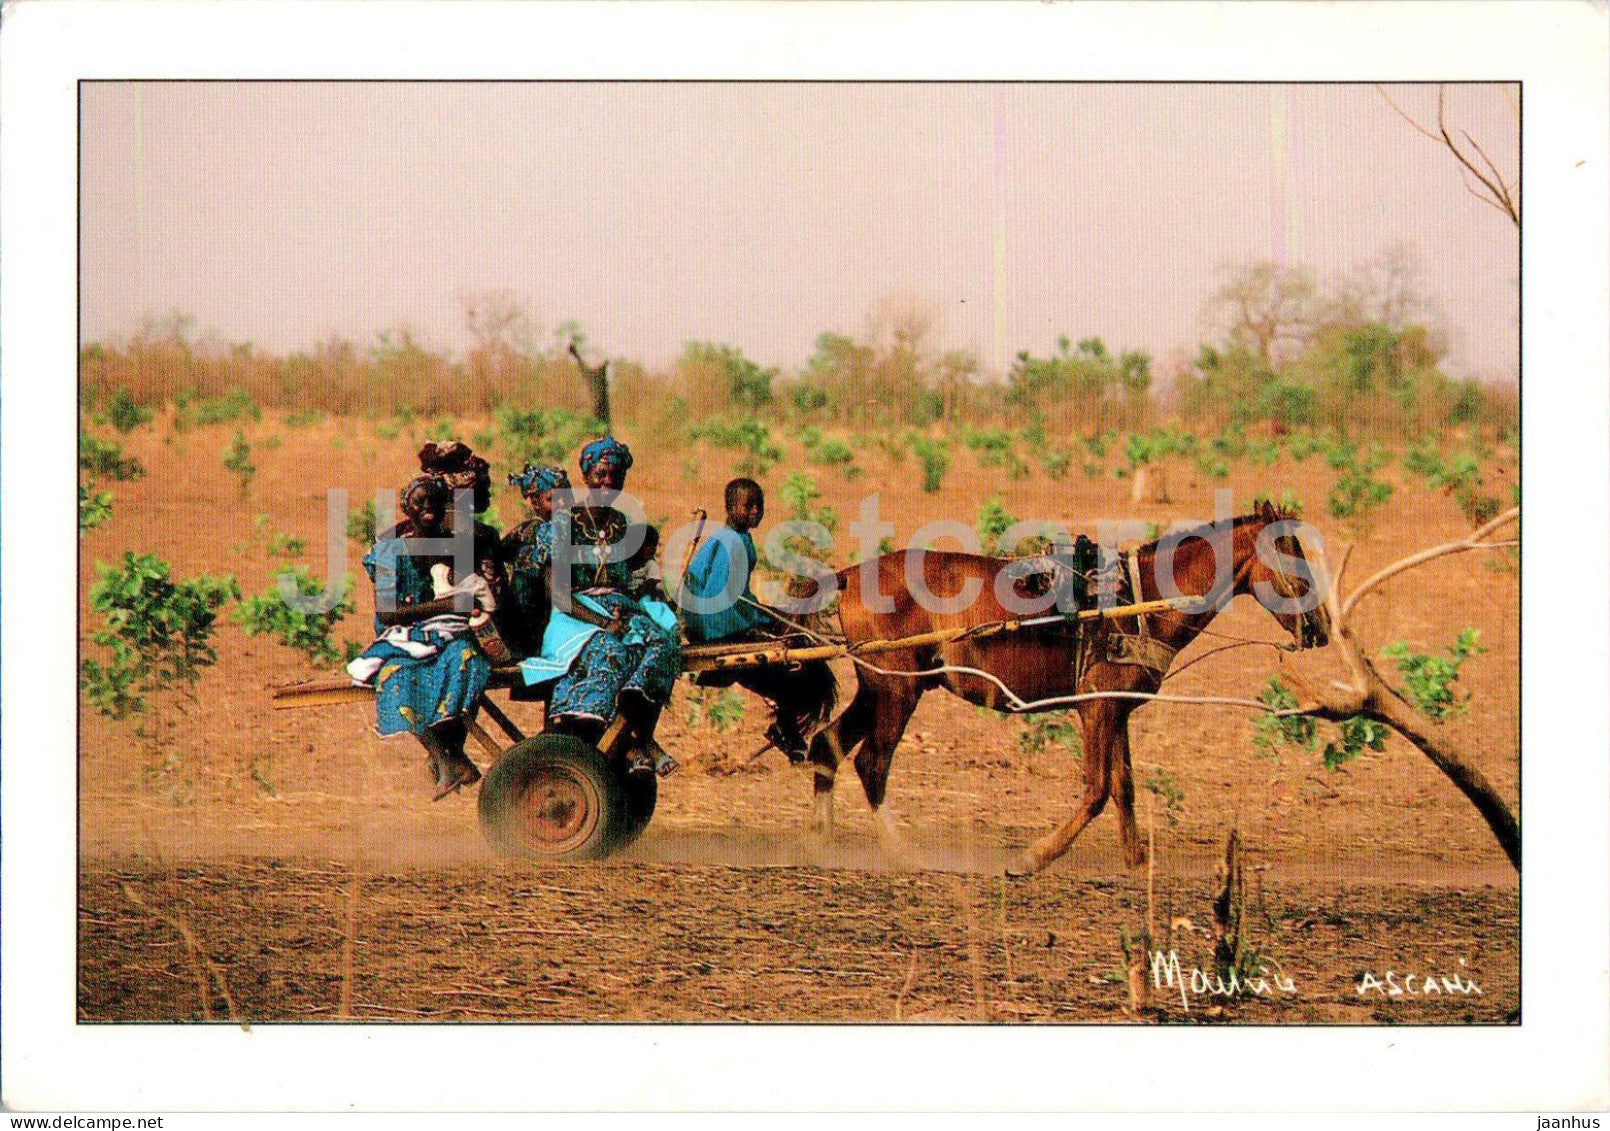 La charrette - transport typique du Senegal - cart - typical transport of Senegal - horse - 32 - Senegal - used - JH Postcards